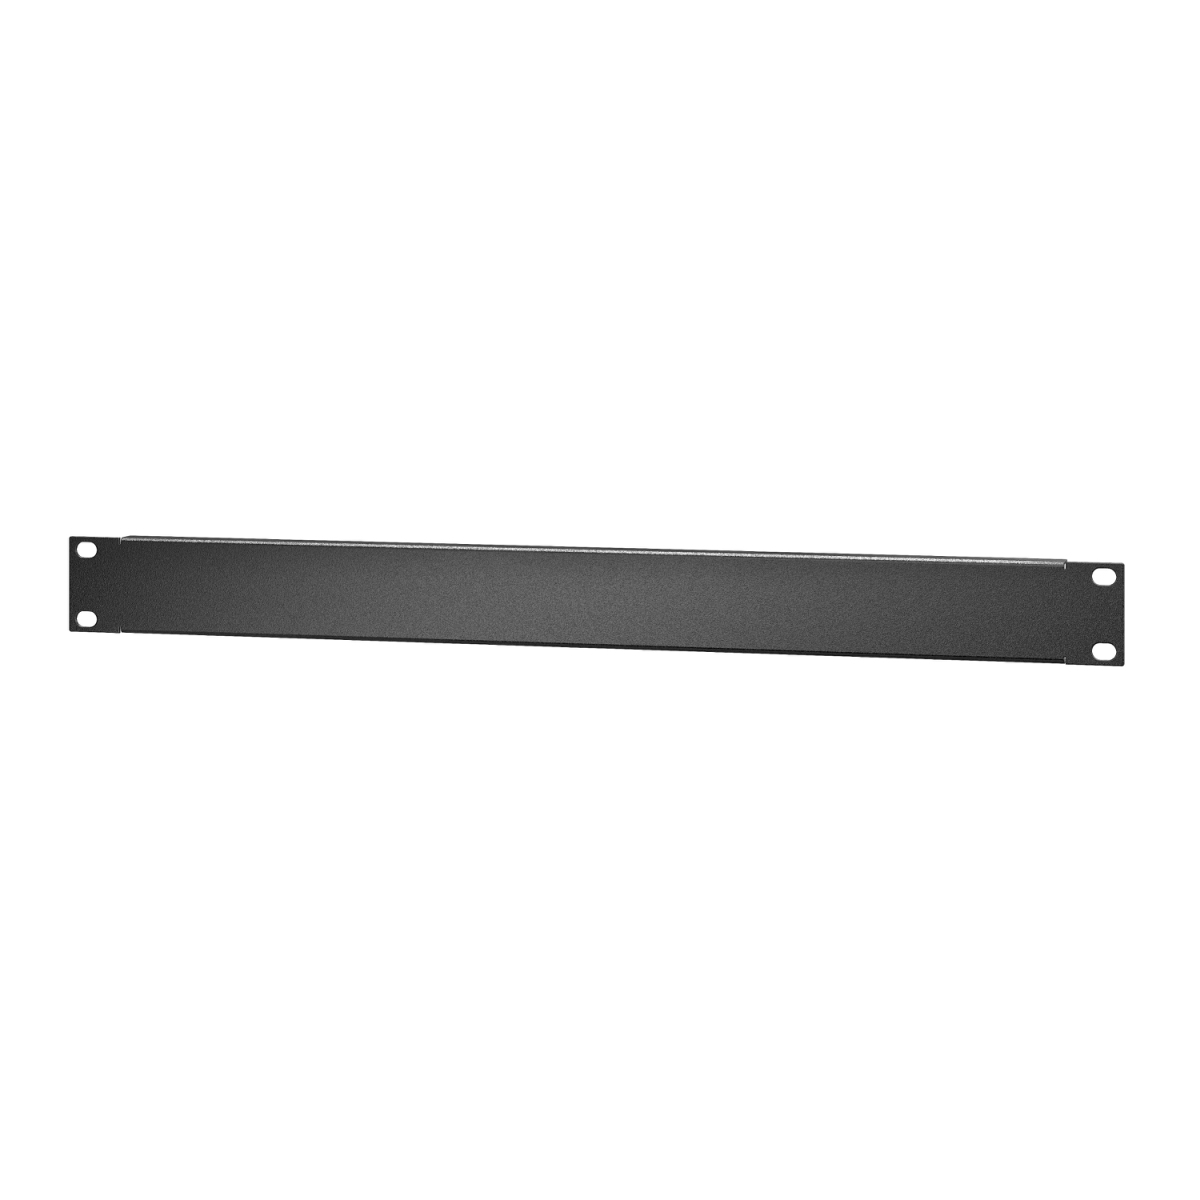 Easy Rack 1U standard metal blanking panel, 10 pk